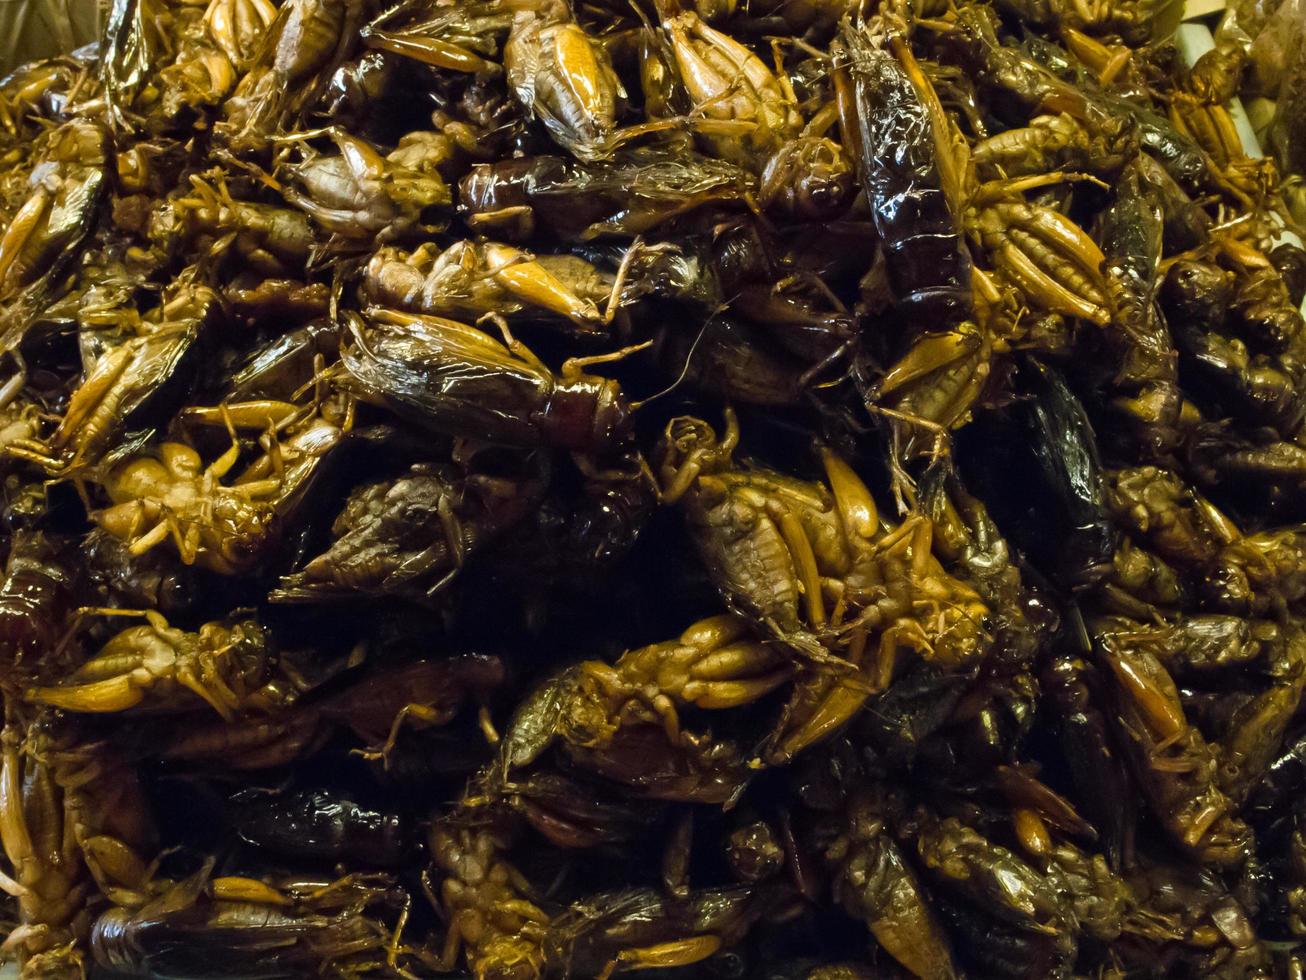 Krokant gebakken insecten zijn regionale delicatessen in veel Aziatische landen zoals Thailand. foto